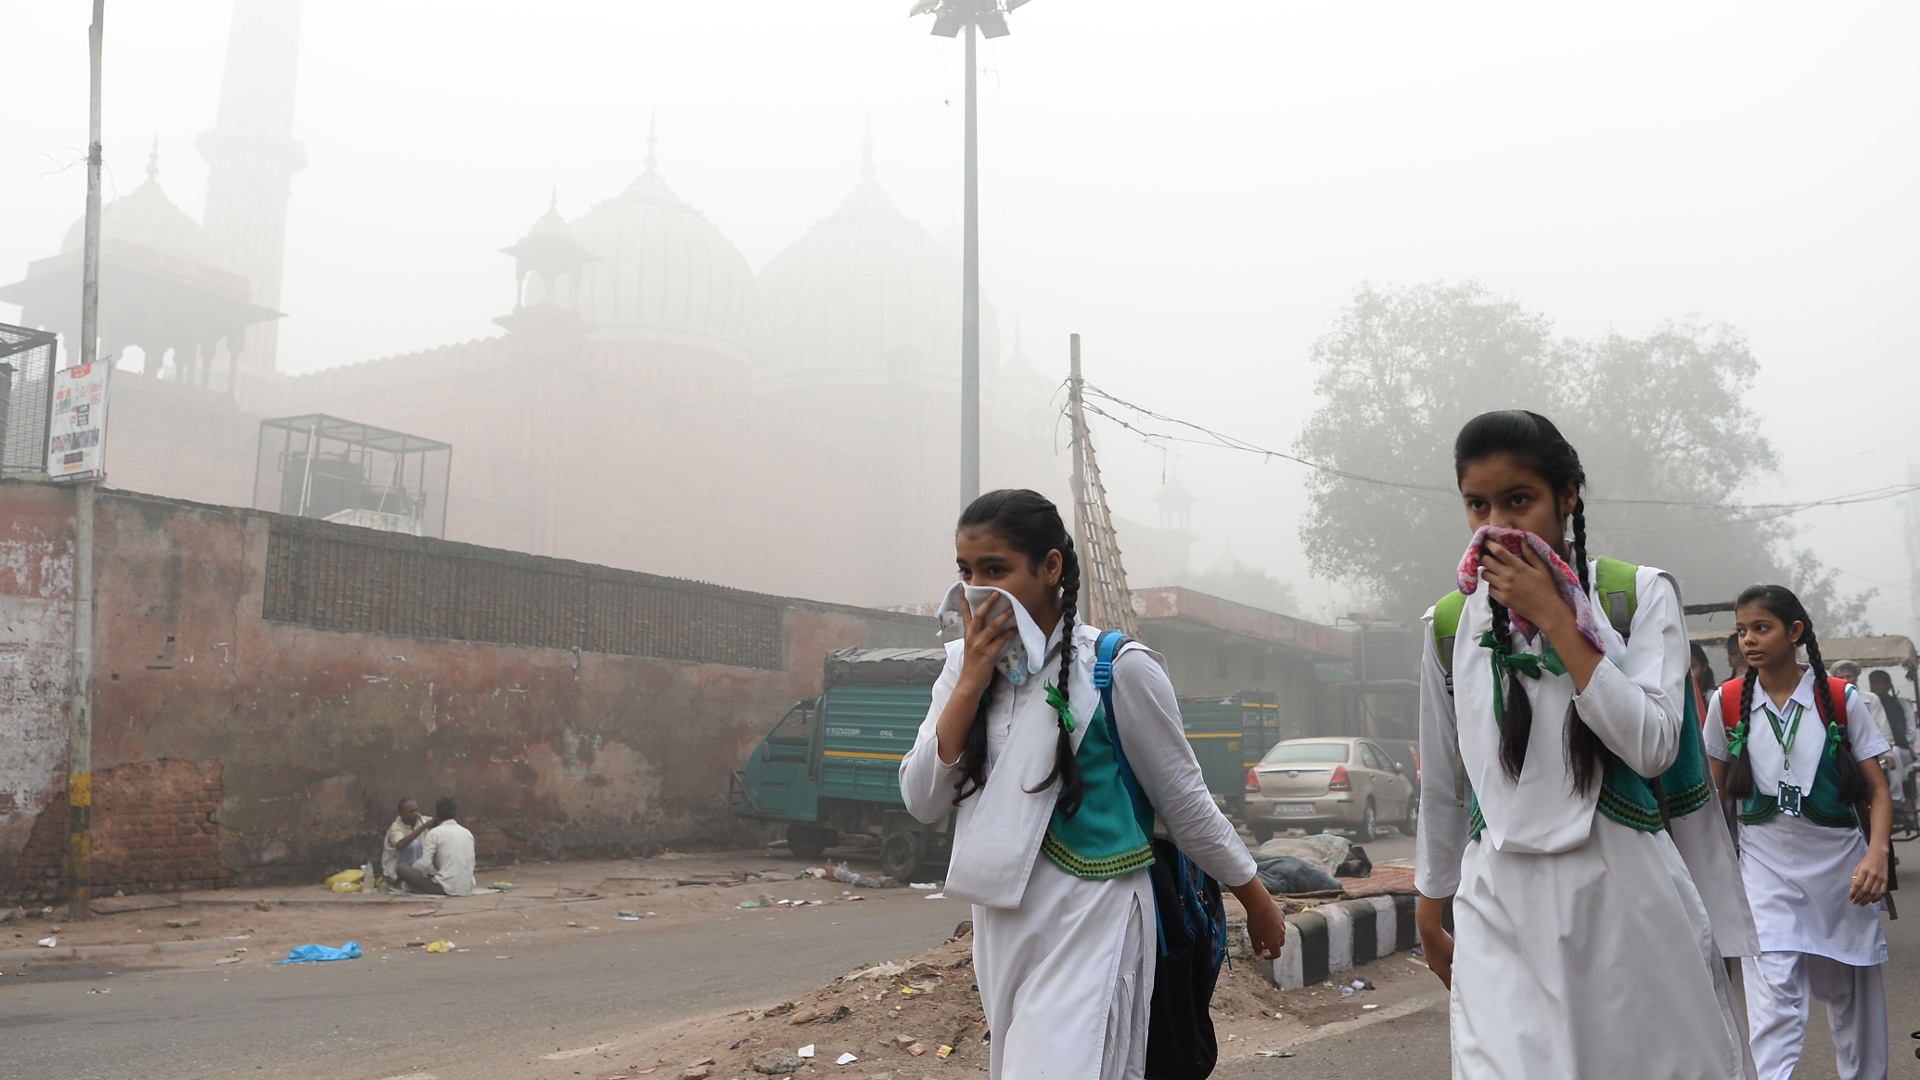 Нечем дышать: в столице Индии призывают закрыть школы